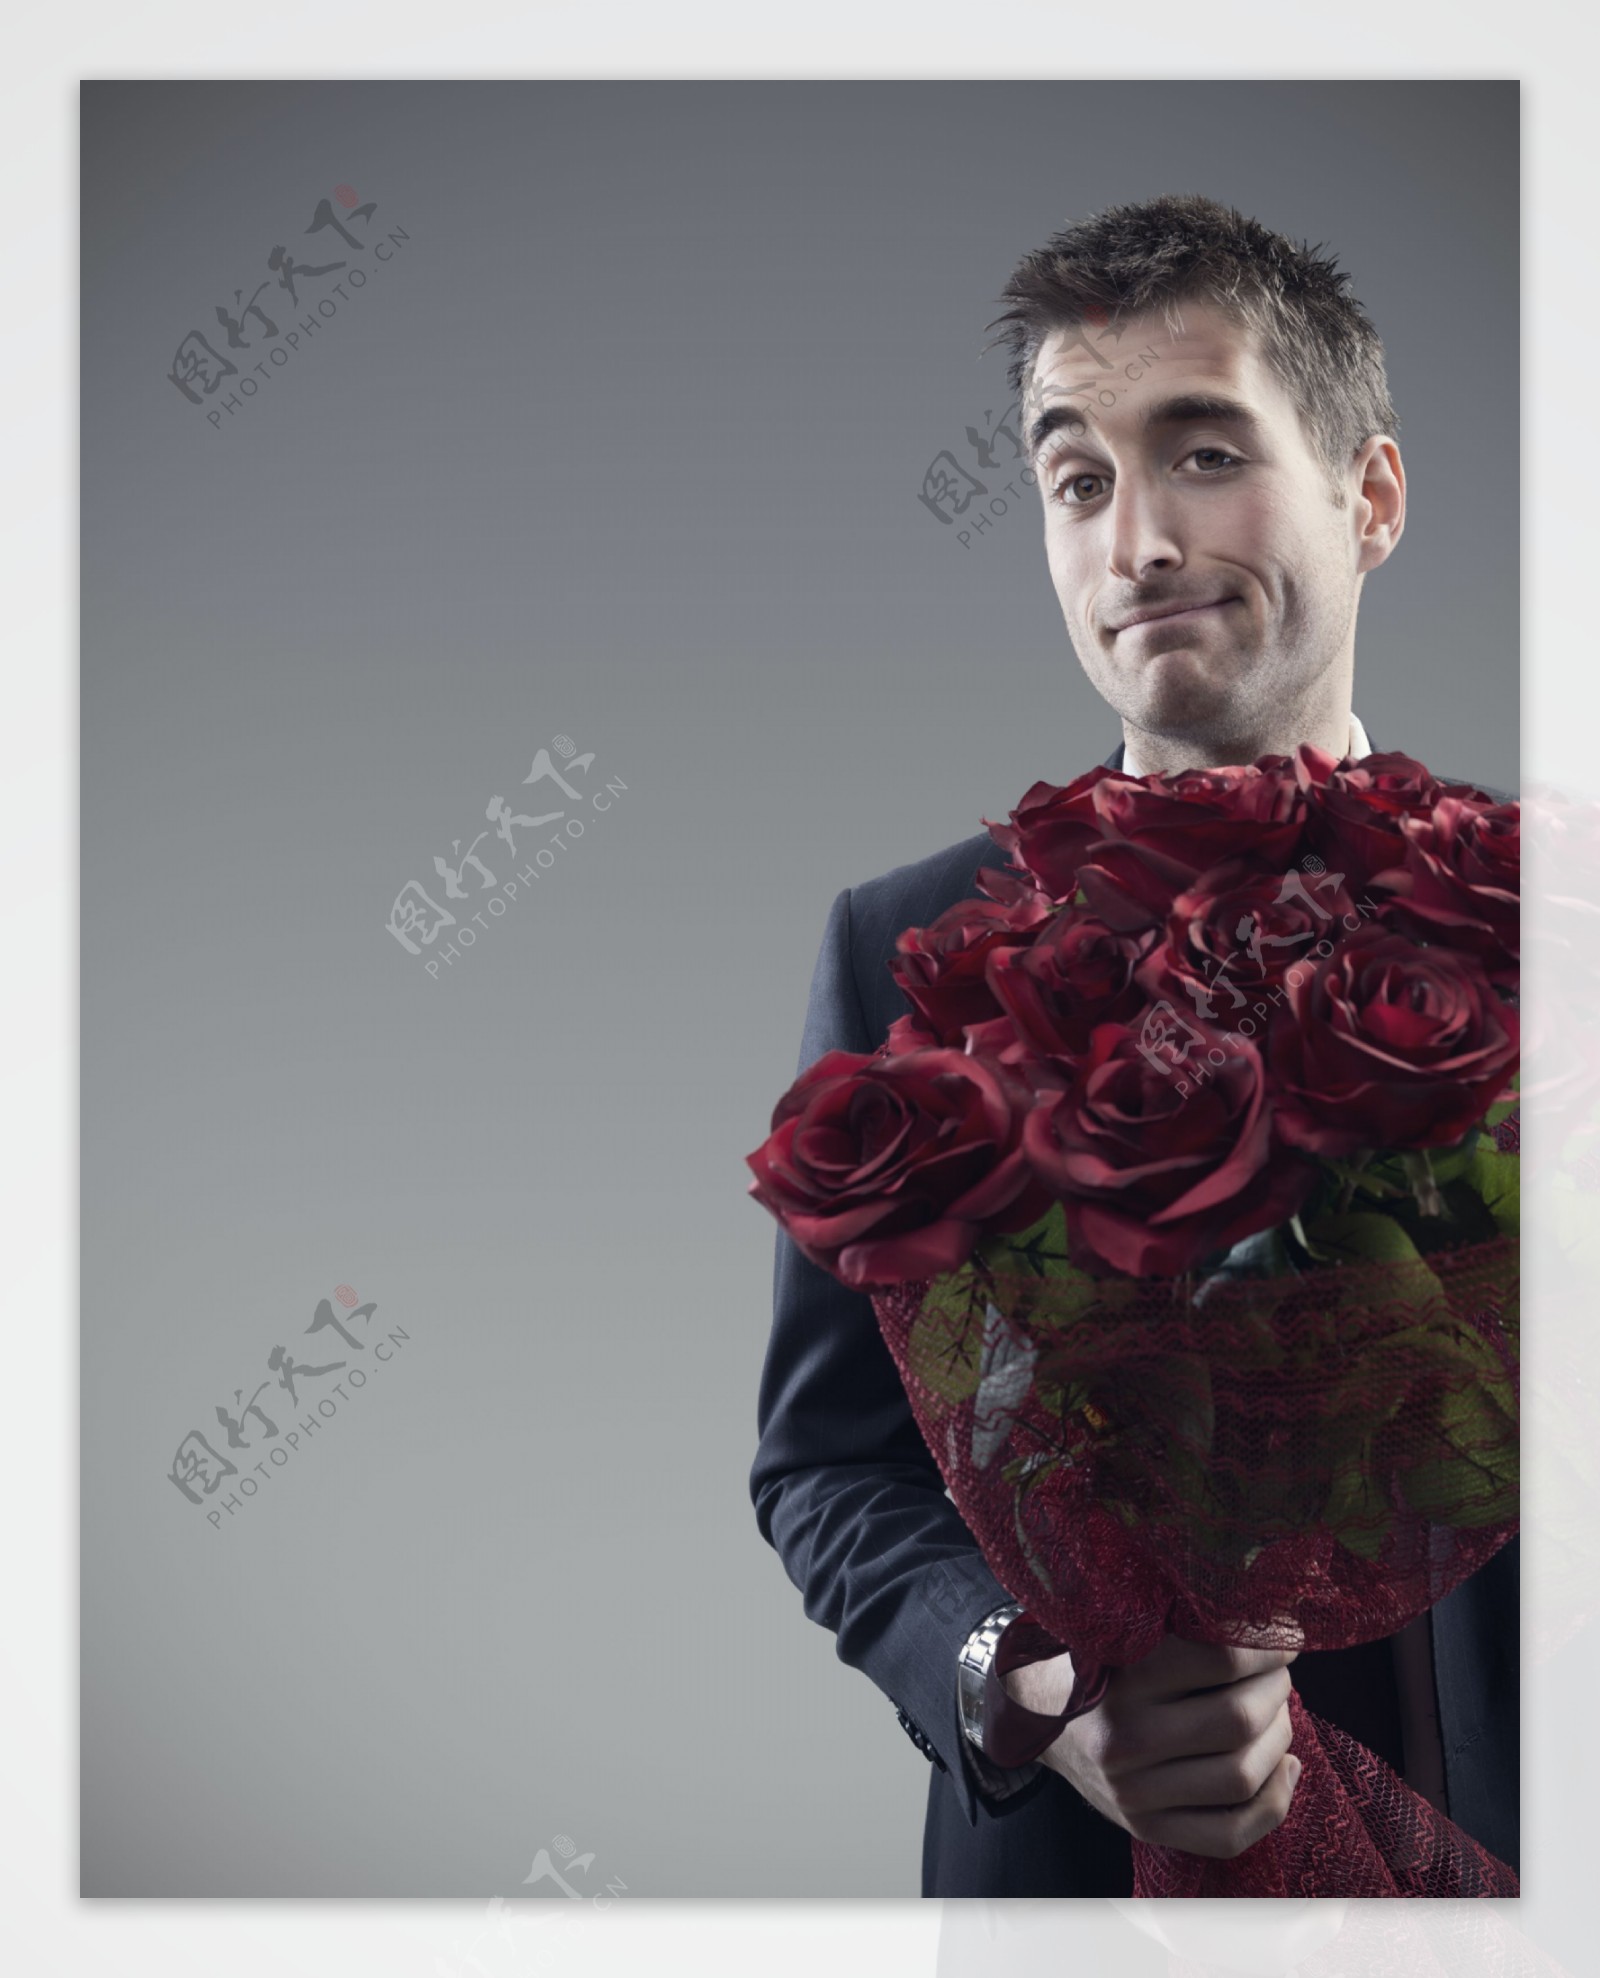 手拿玫瑰花的美女图片素材-编号26952398-图行天下